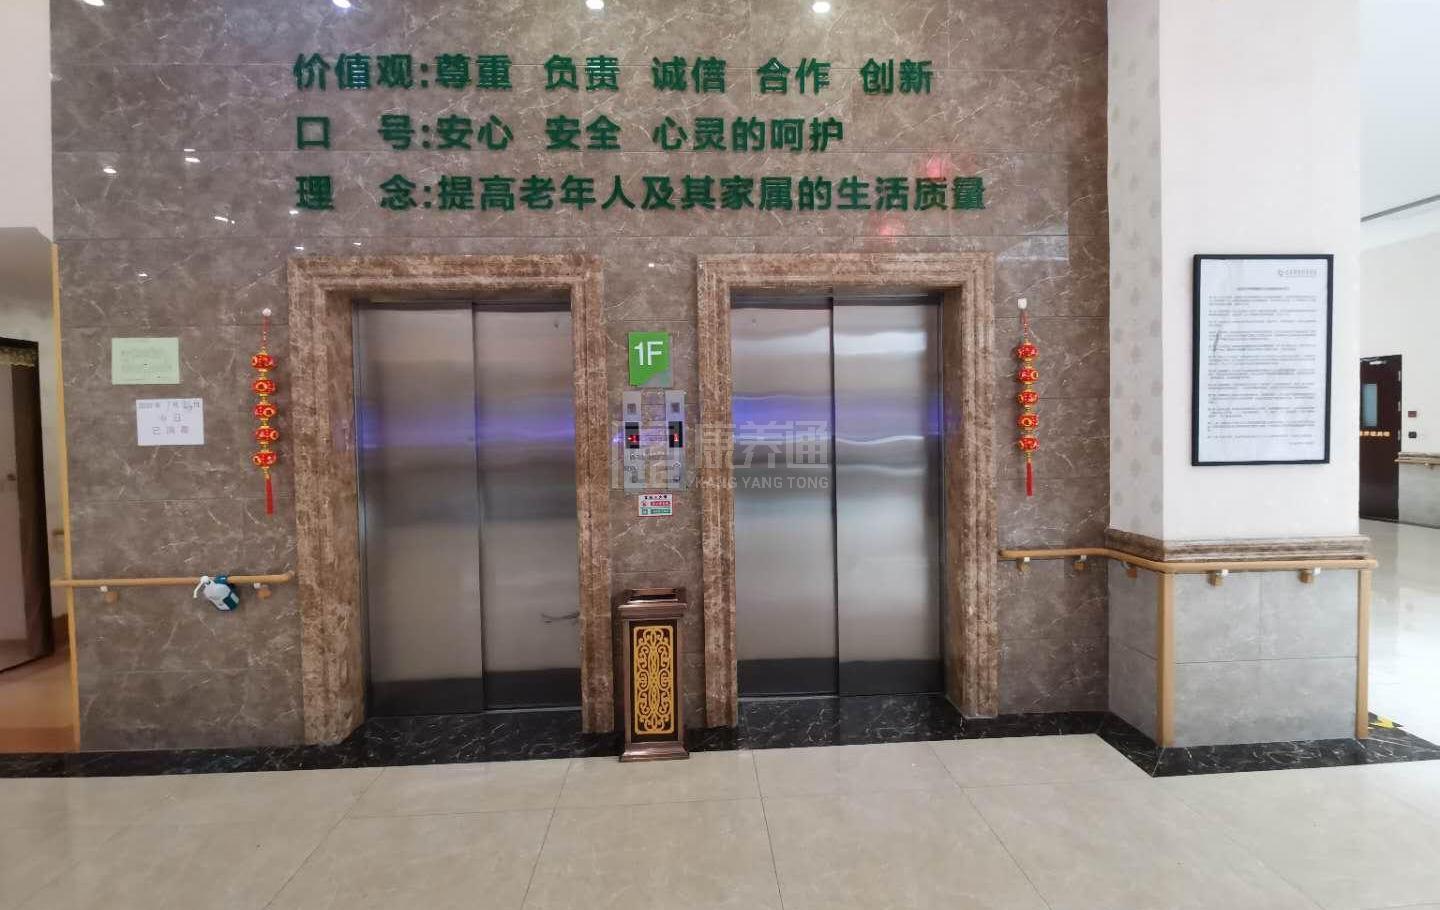 北京汇晨古塔老年公寓有限公司服务项目图4让长者主动而自立地生活